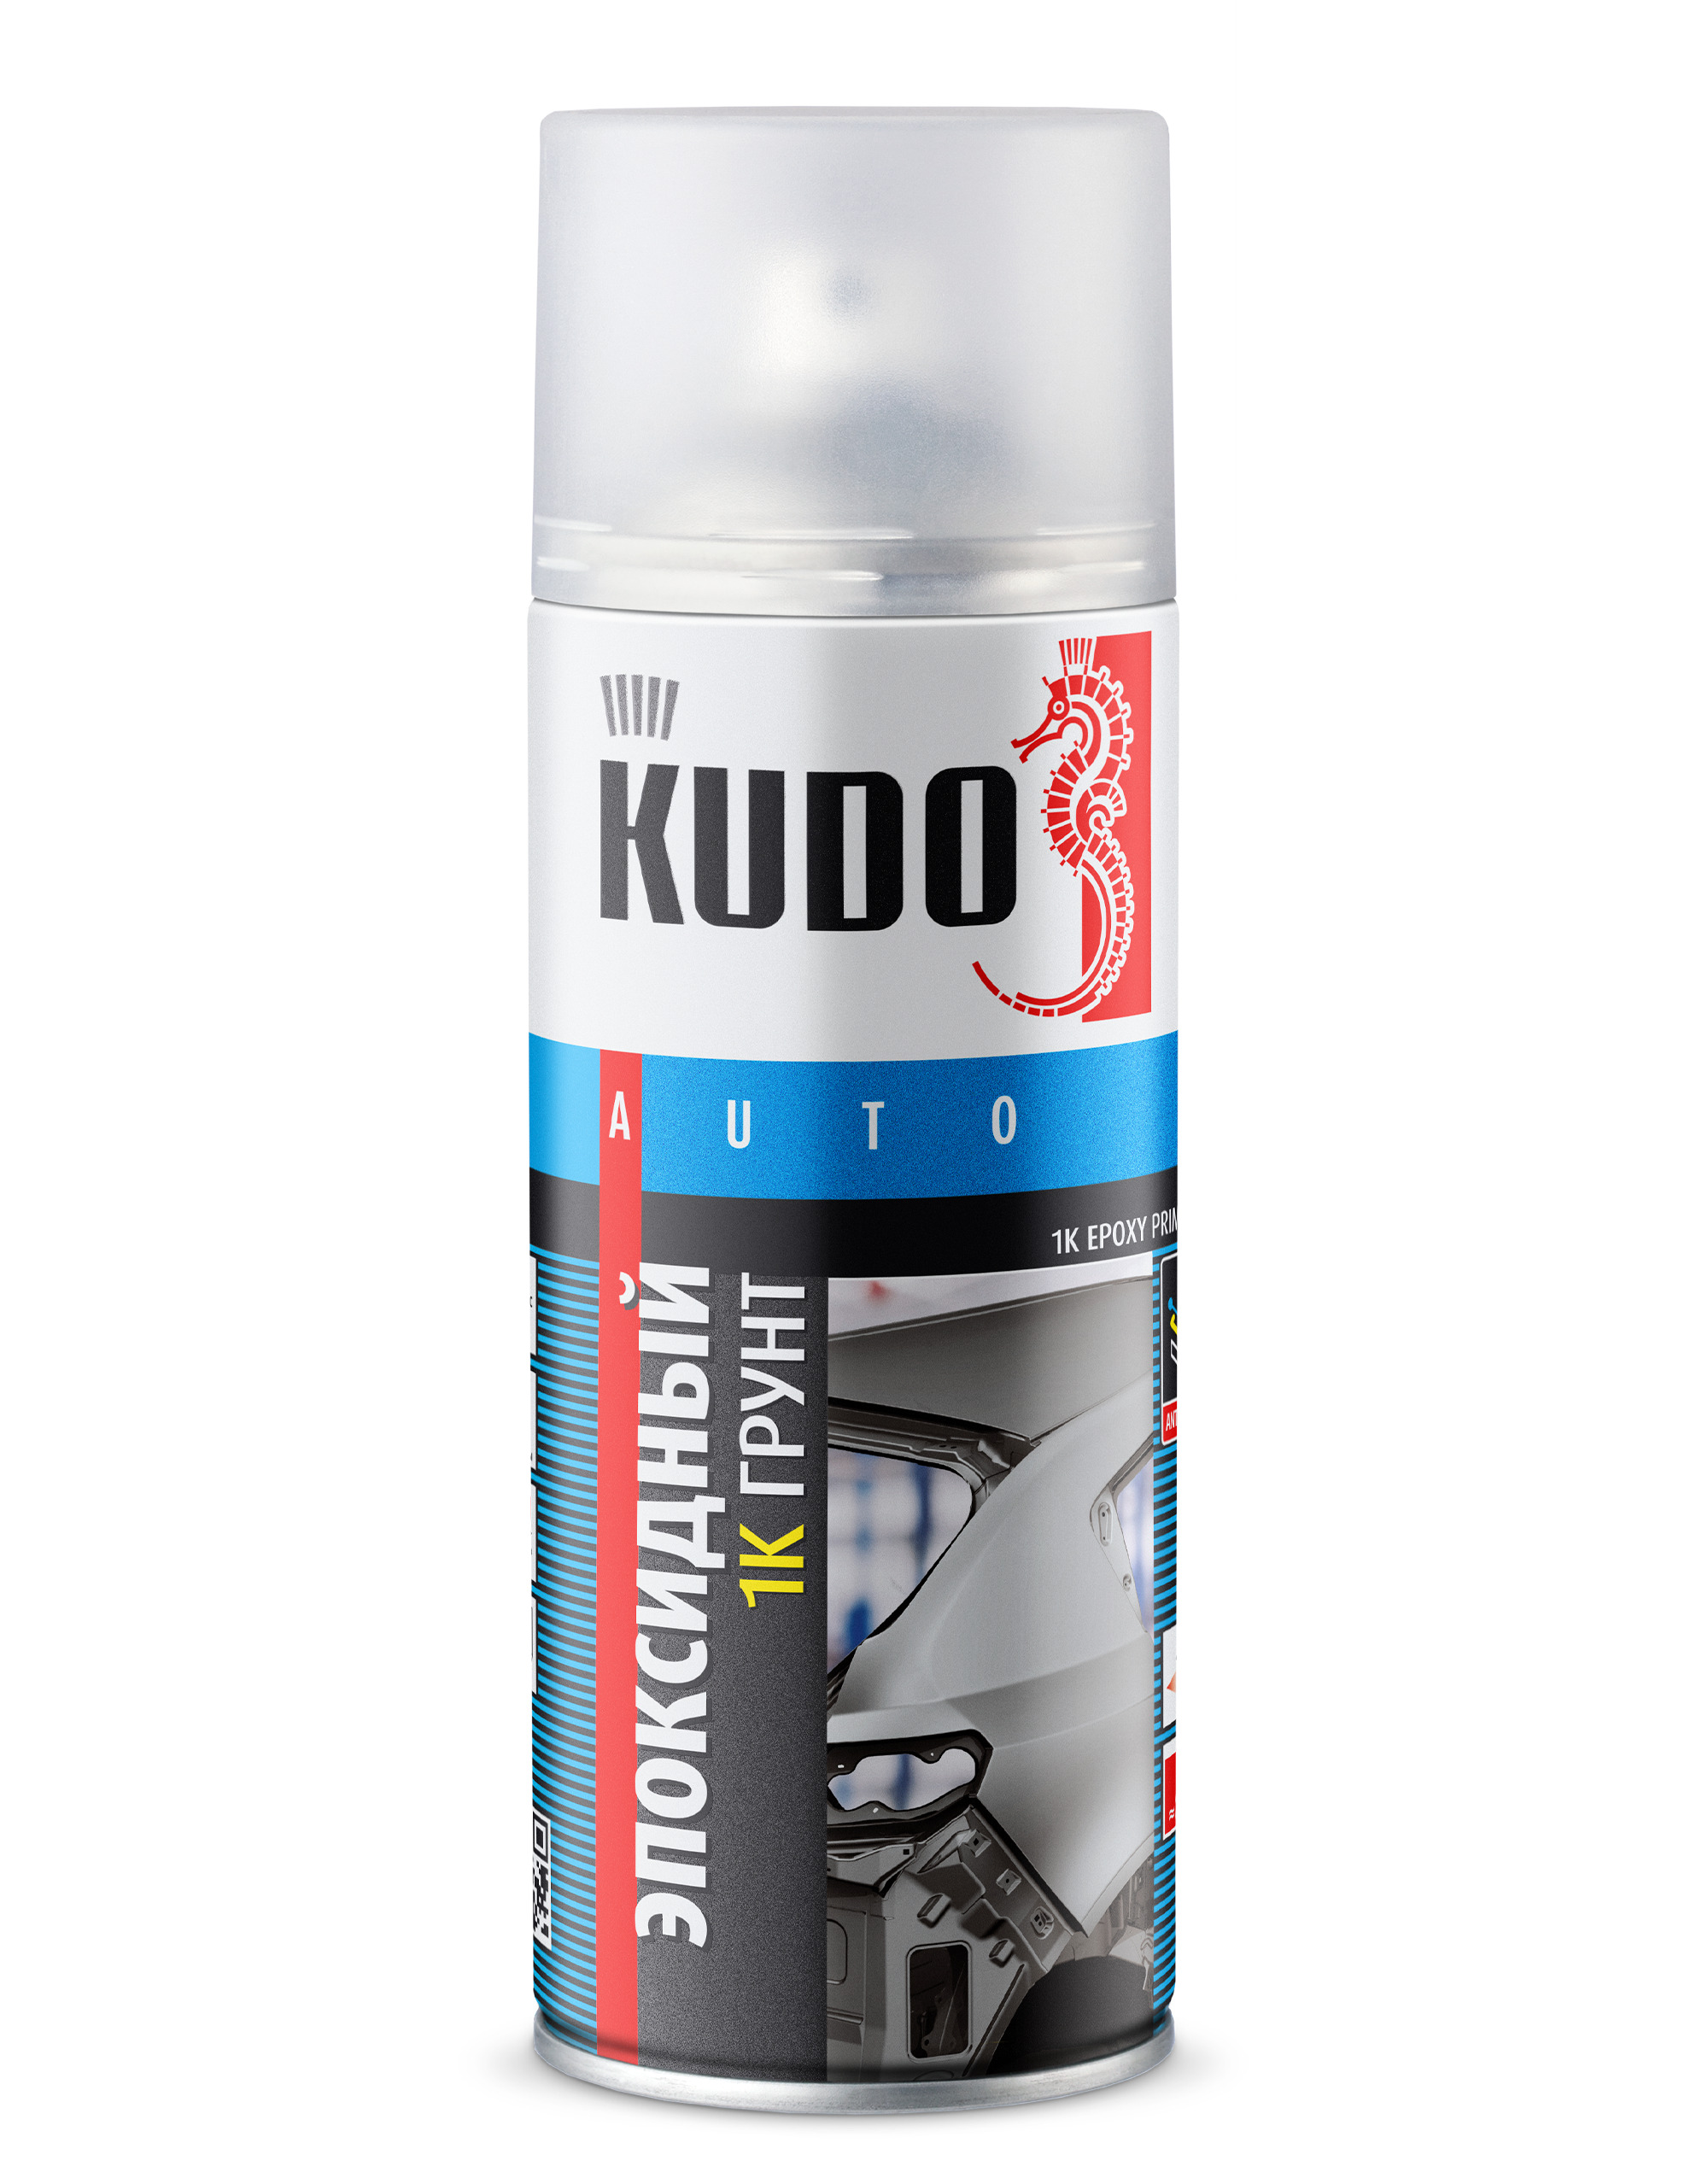 Грунт Kudo Epoxy Primer 1К эпоксидный, для точечного ремонта, серый, KU-2403, 520 мл